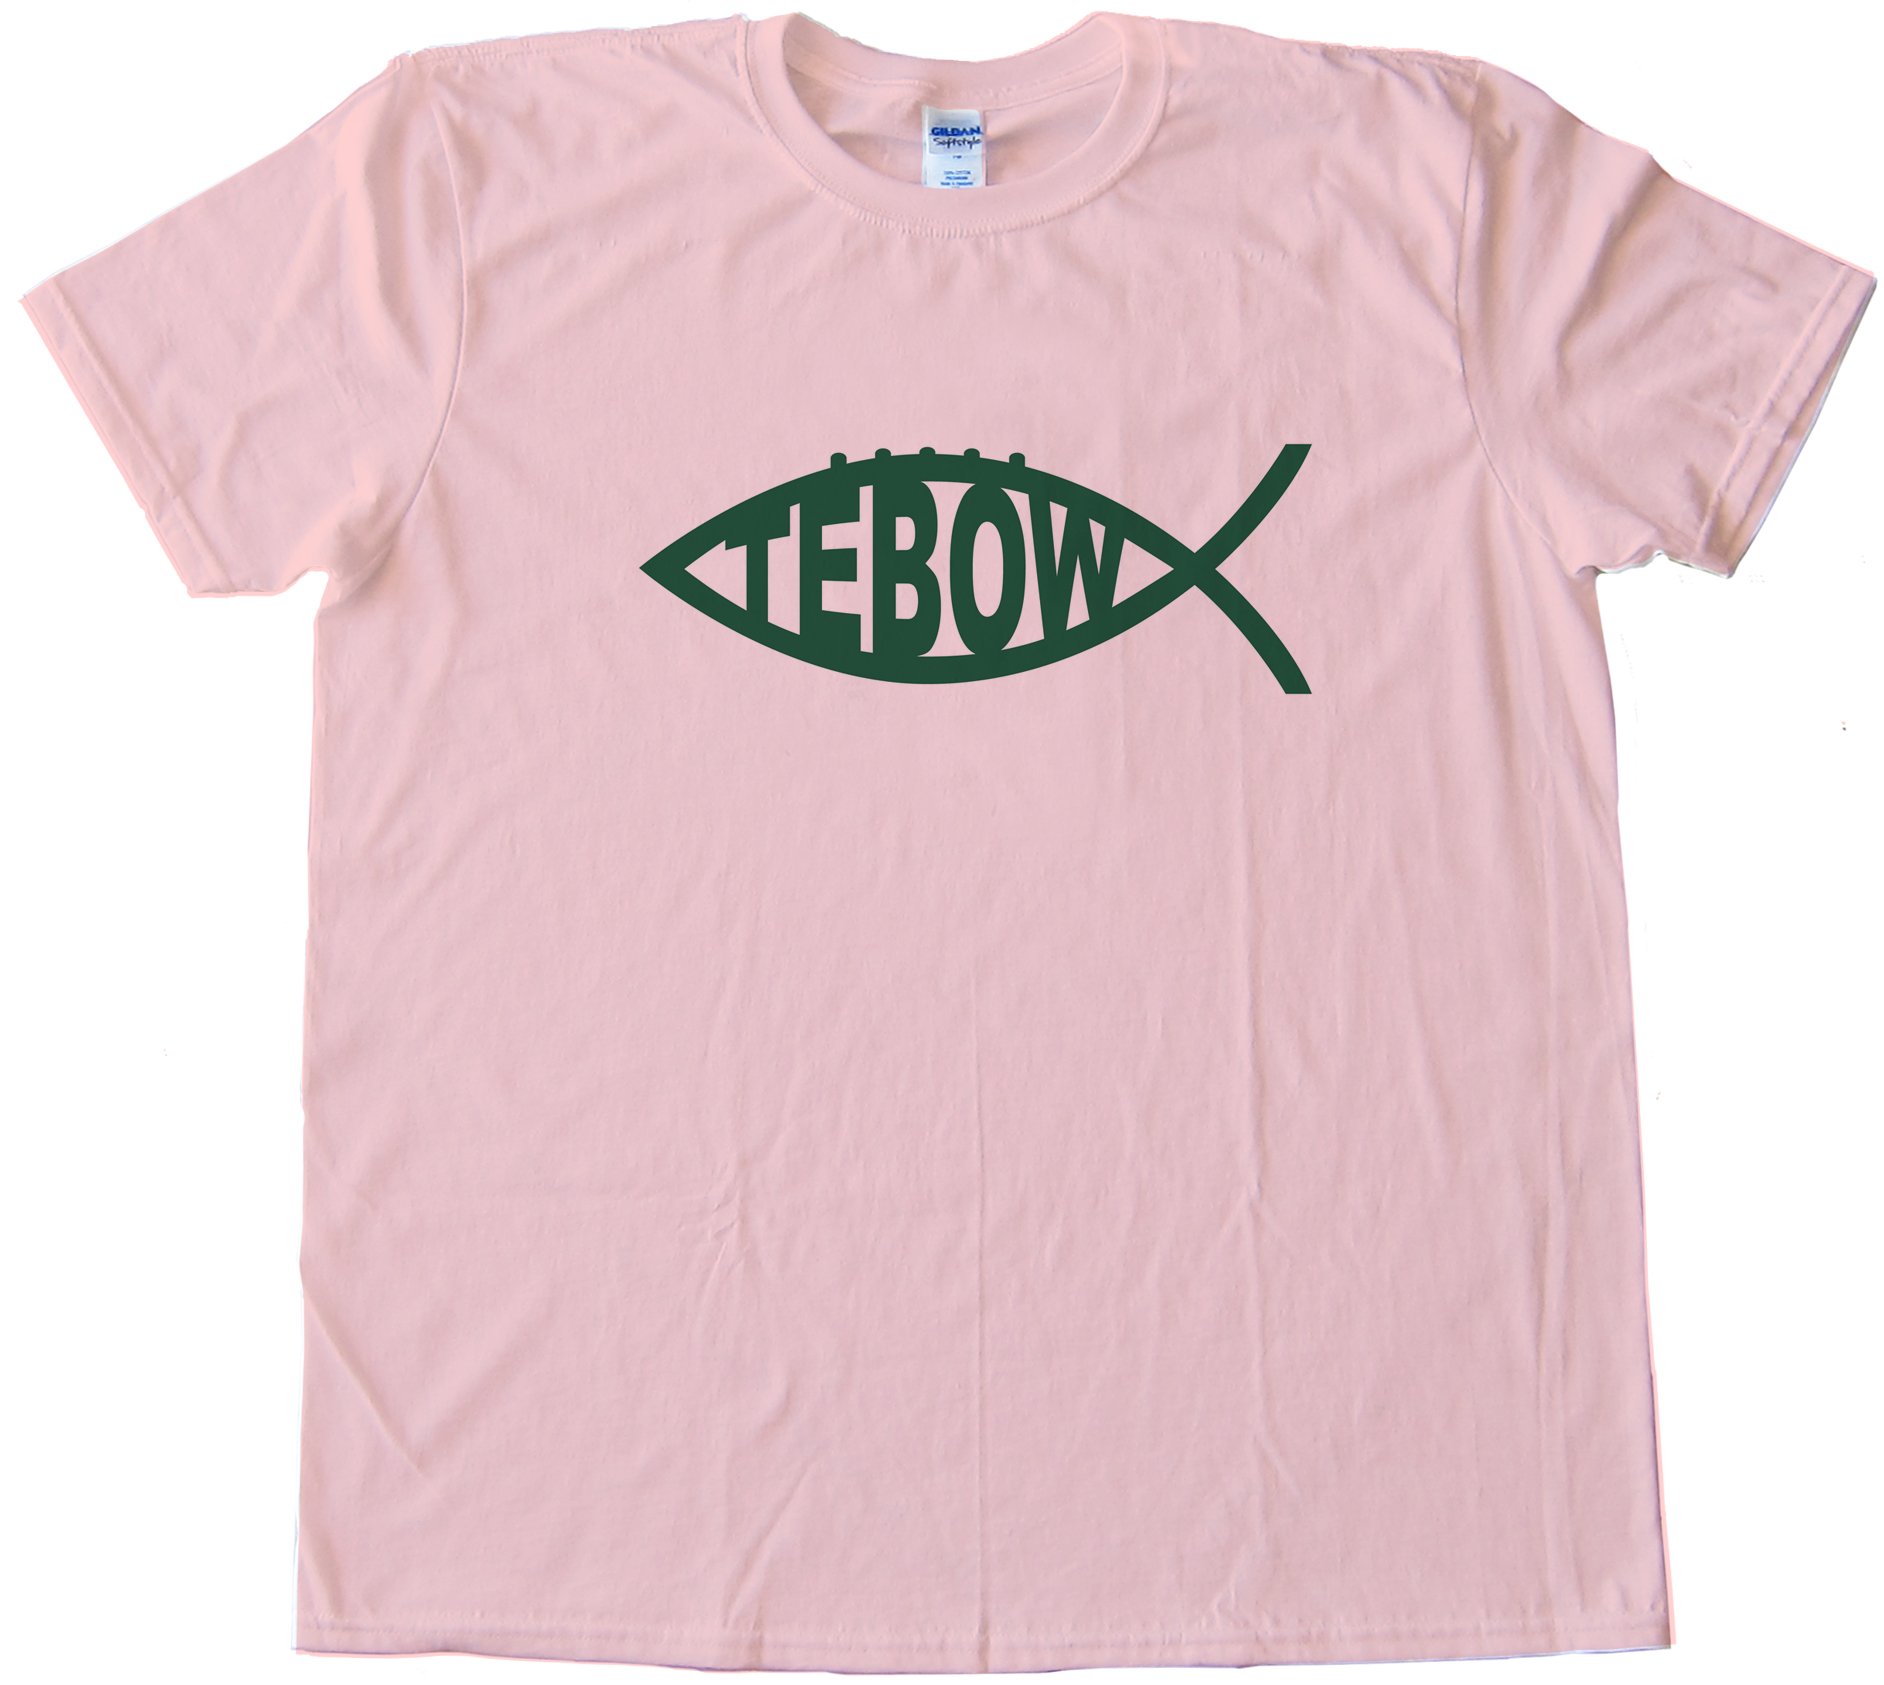 Tebow Fish Ny Jets Tee Shirt